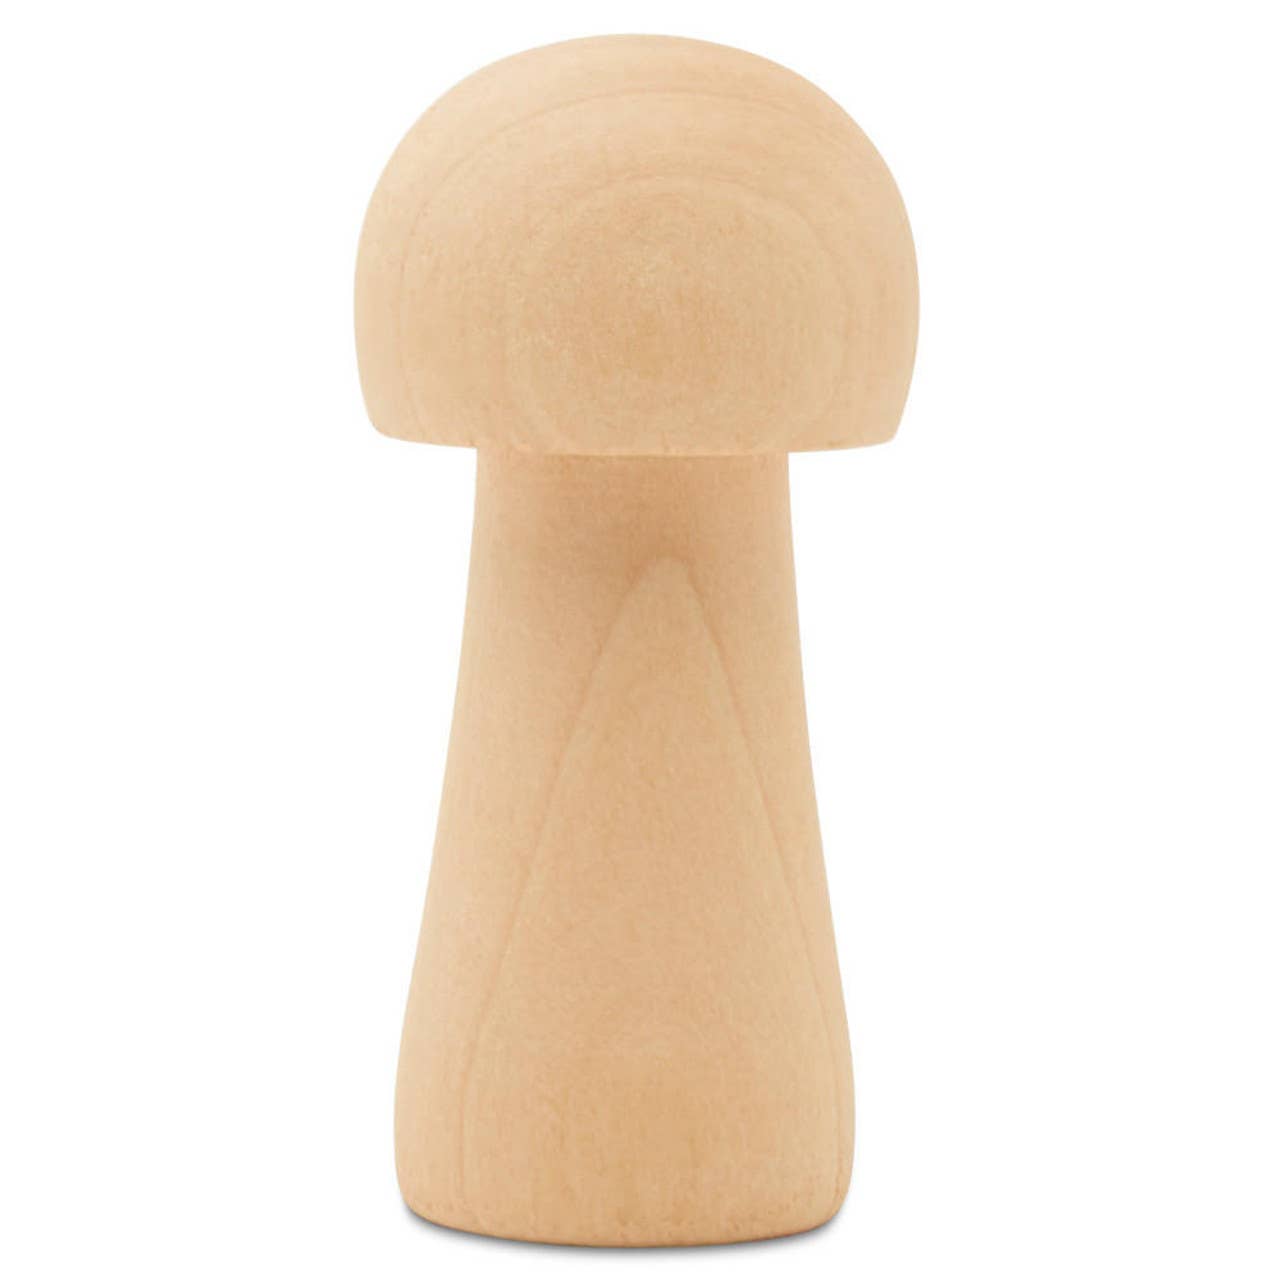 Wood Mushroom, 1-1/4"